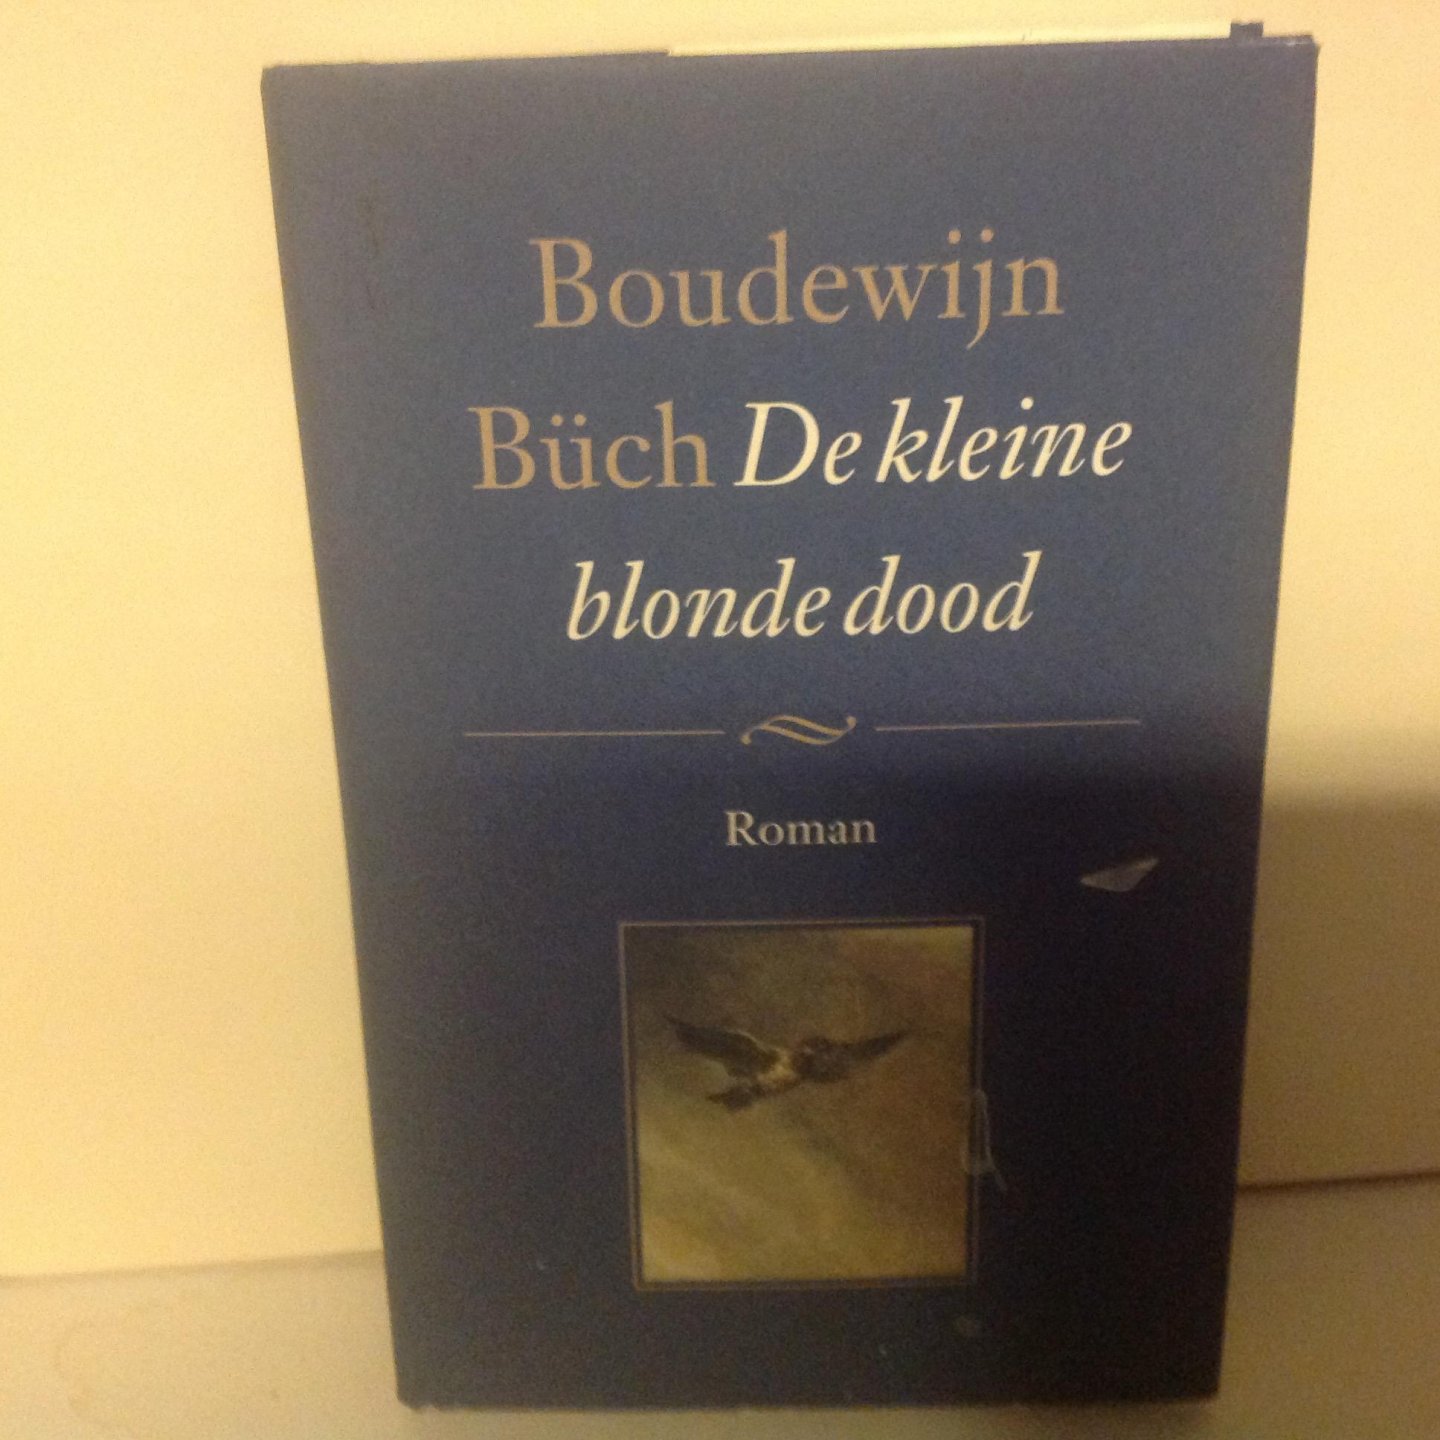 Buch, B. - De kleine blonde dood